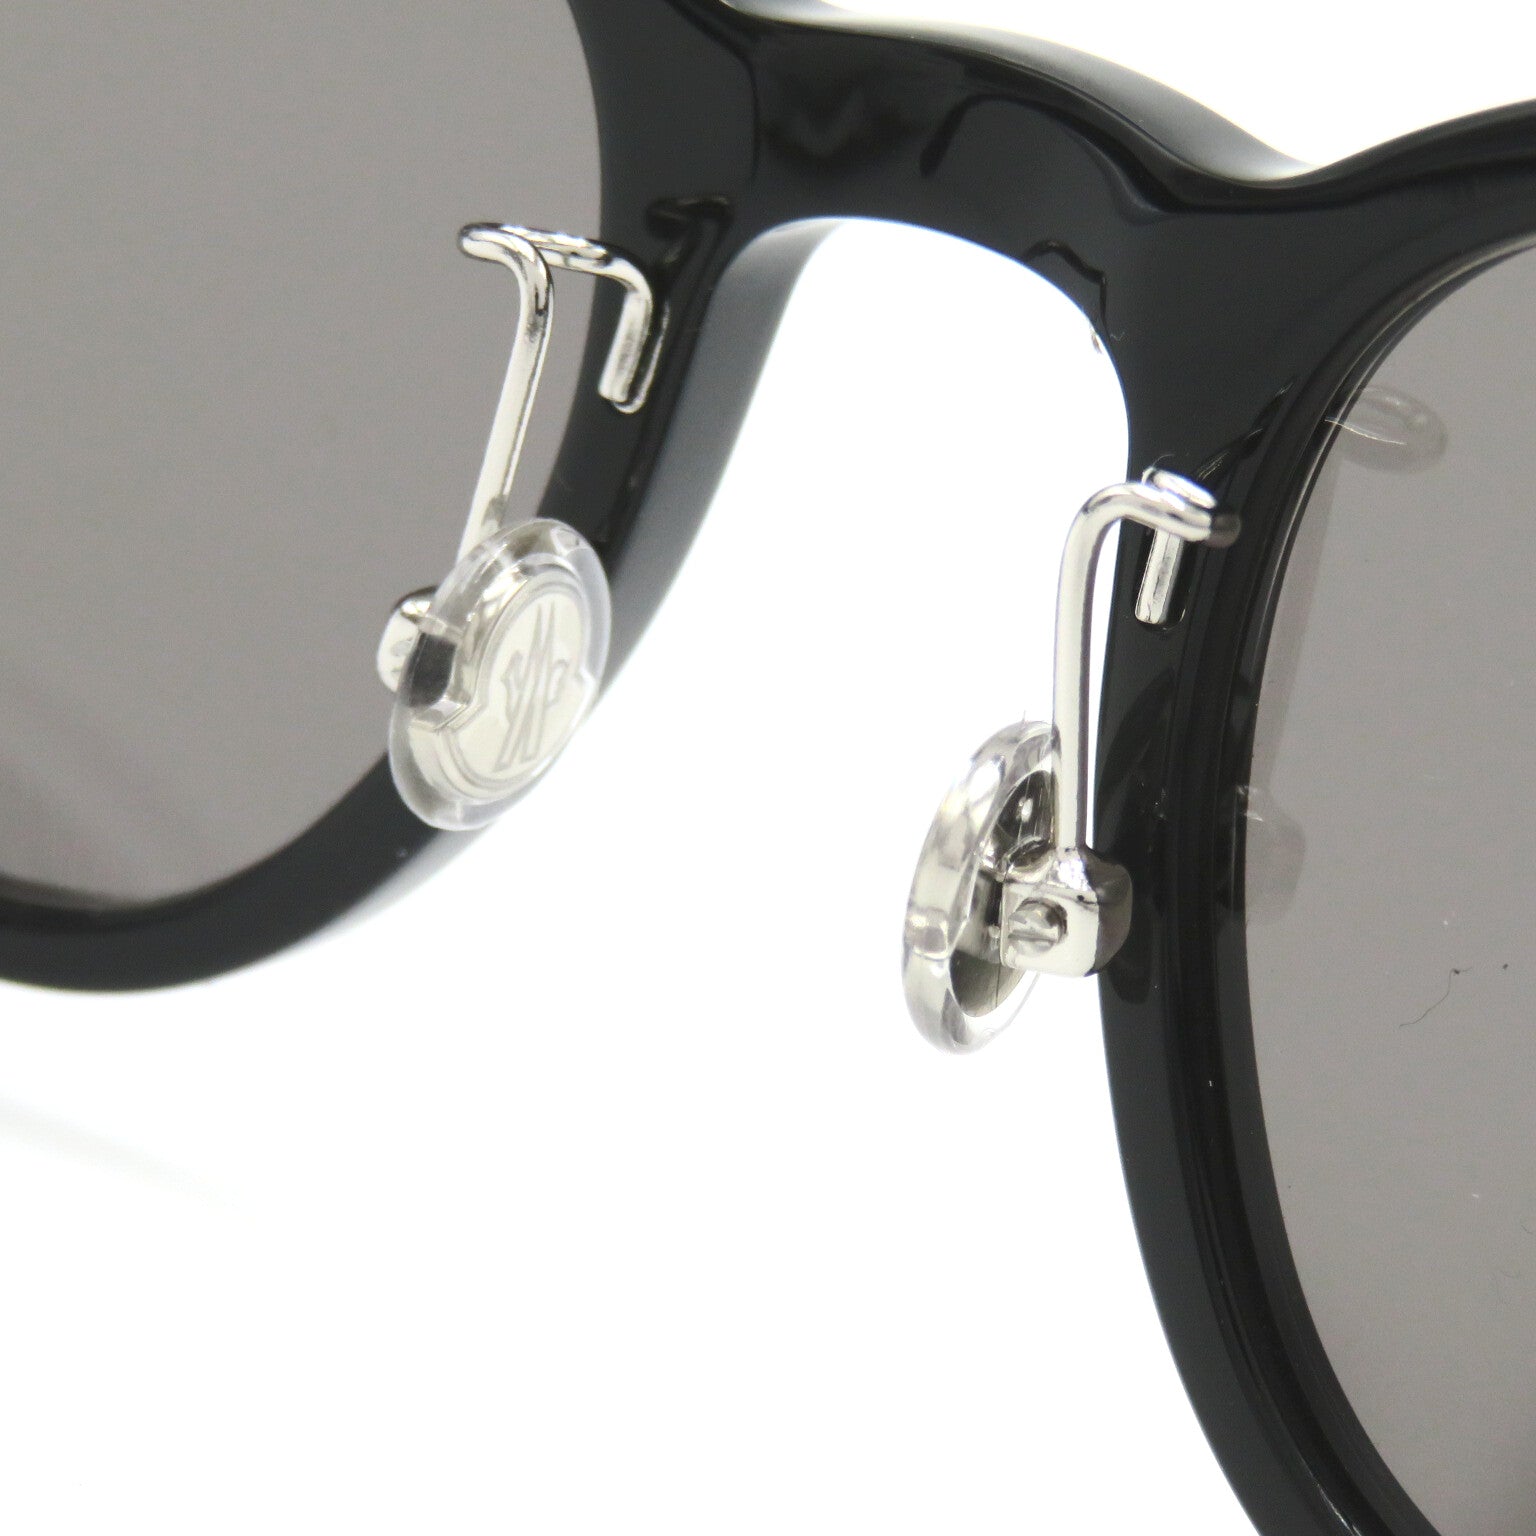 Moncler Moncler Sun Glasses    Black Grsmork Lens 5201D 001(50)